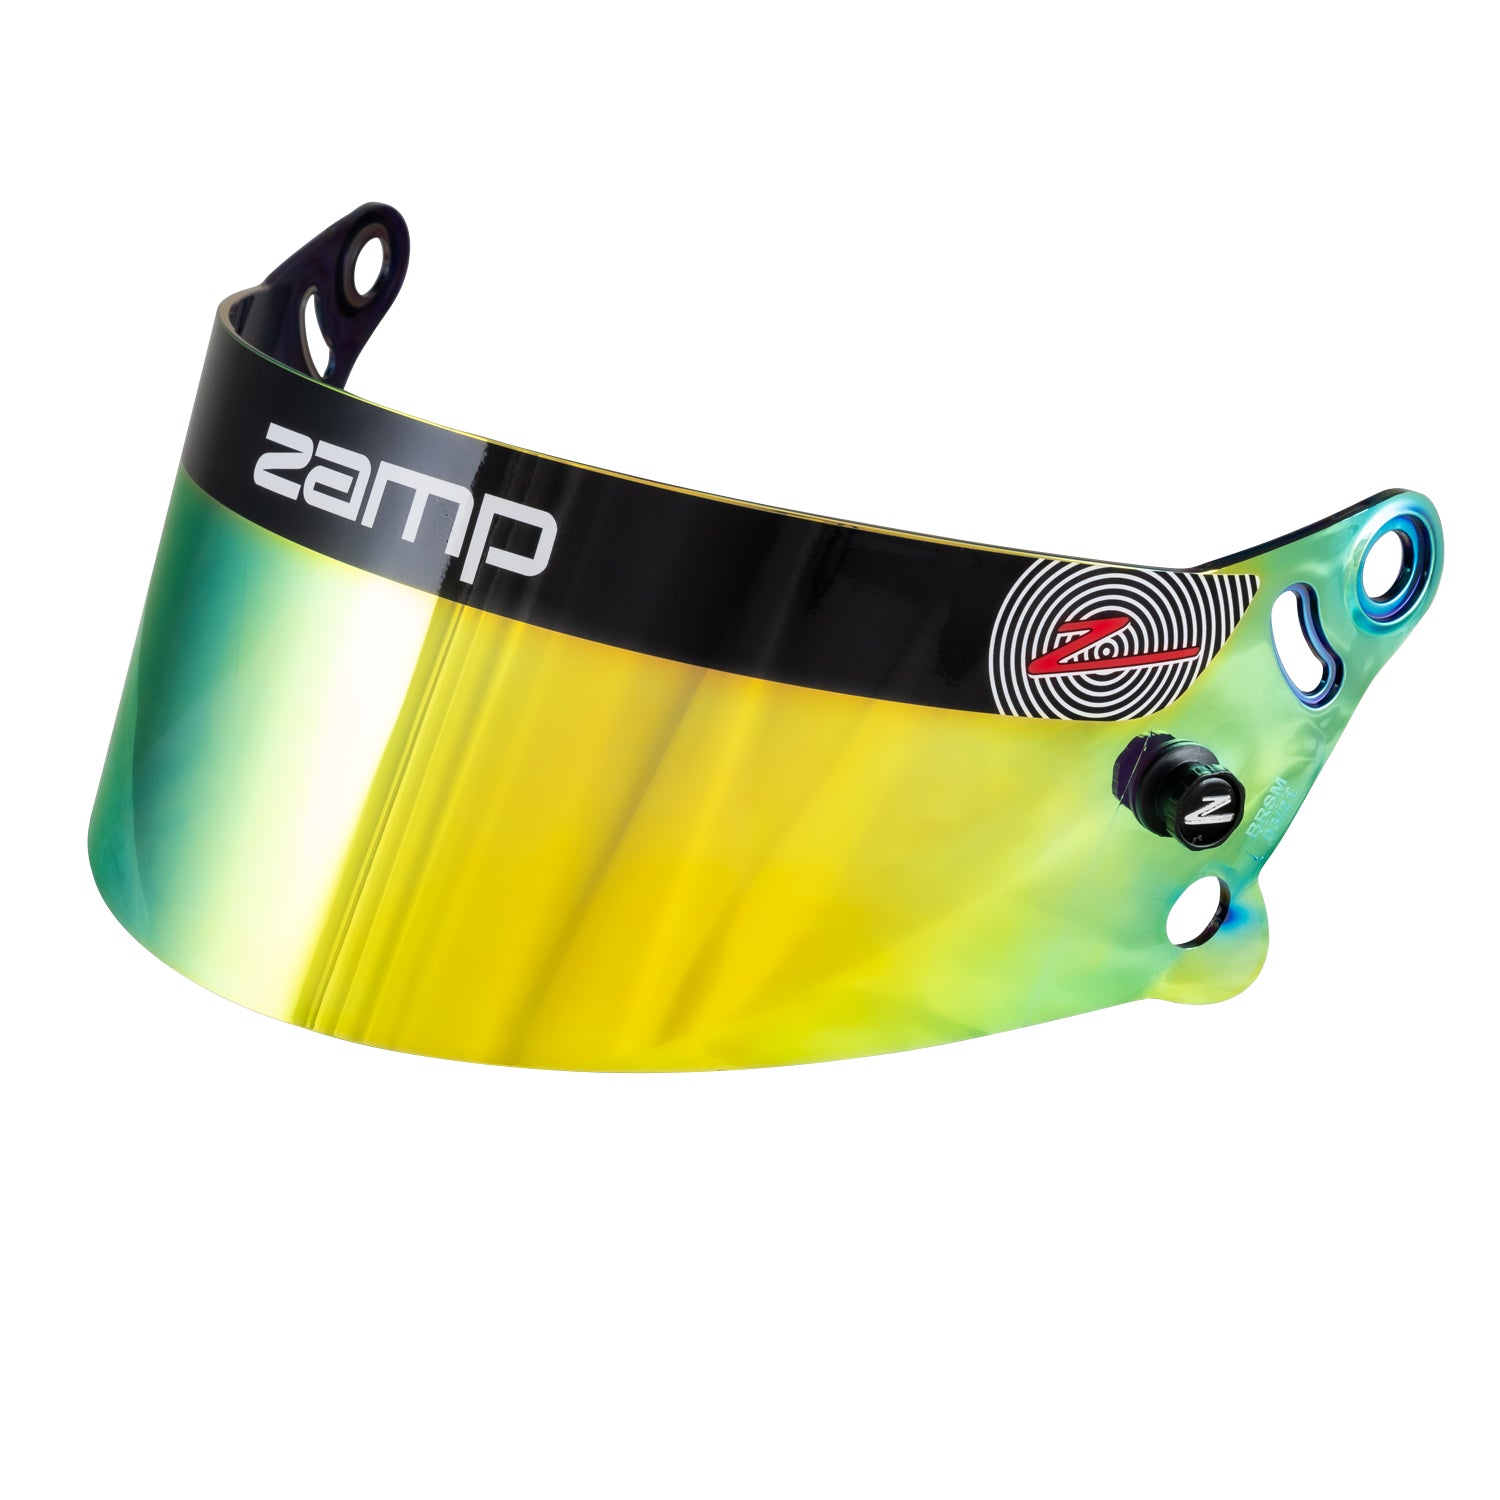 Zamp Z-20 Series Prism Shields, 5 options